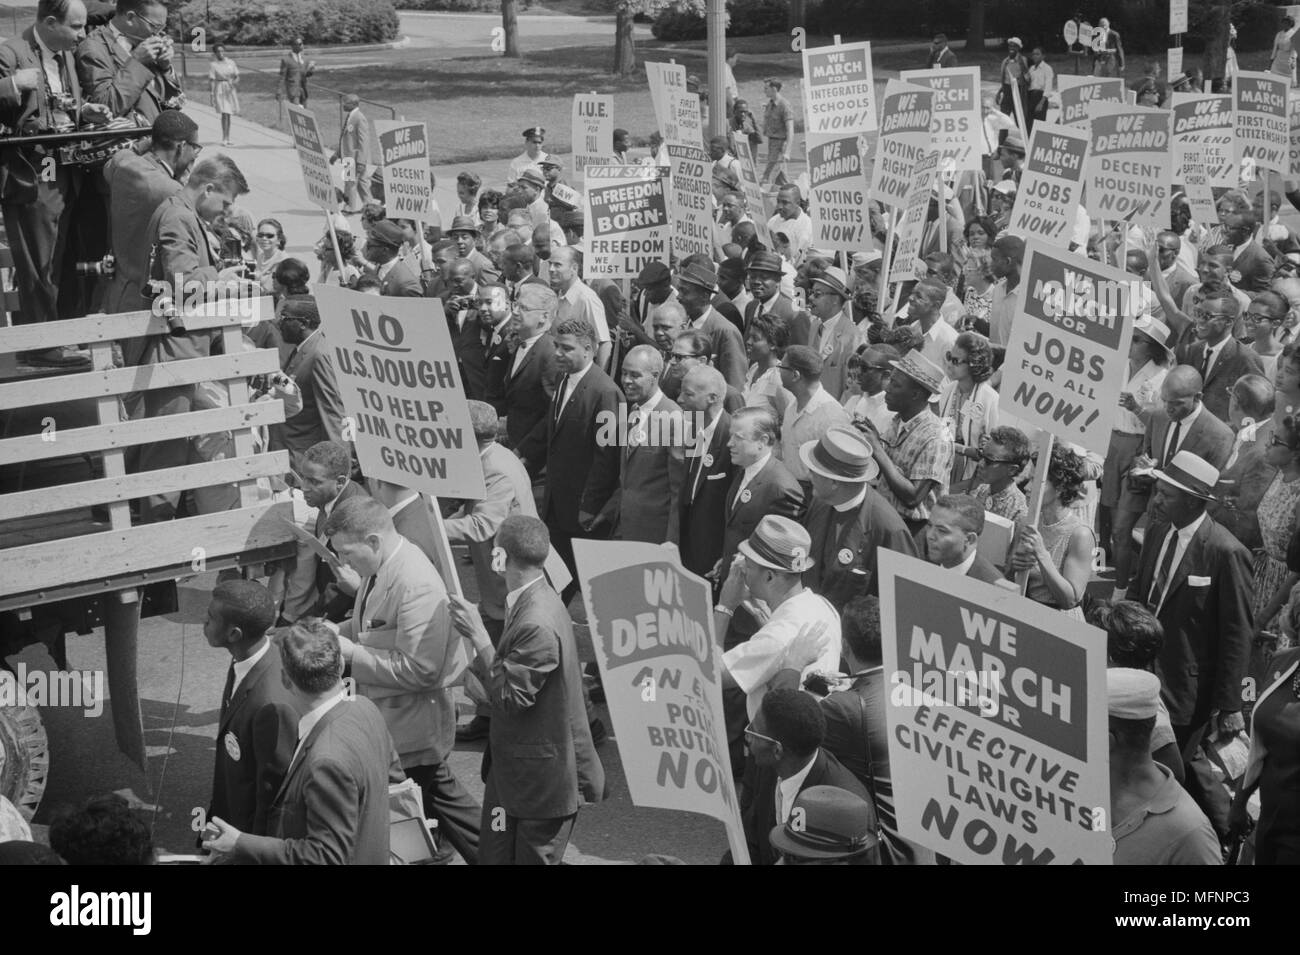 Manifestation à Washington, DC, USA. Les dirigeants des droits civils, y compris Martin Luther King, Jr, entouré par des foules portant des signes. 28 août 1968. Photographe : Warren K Leffler. Banque D'Images